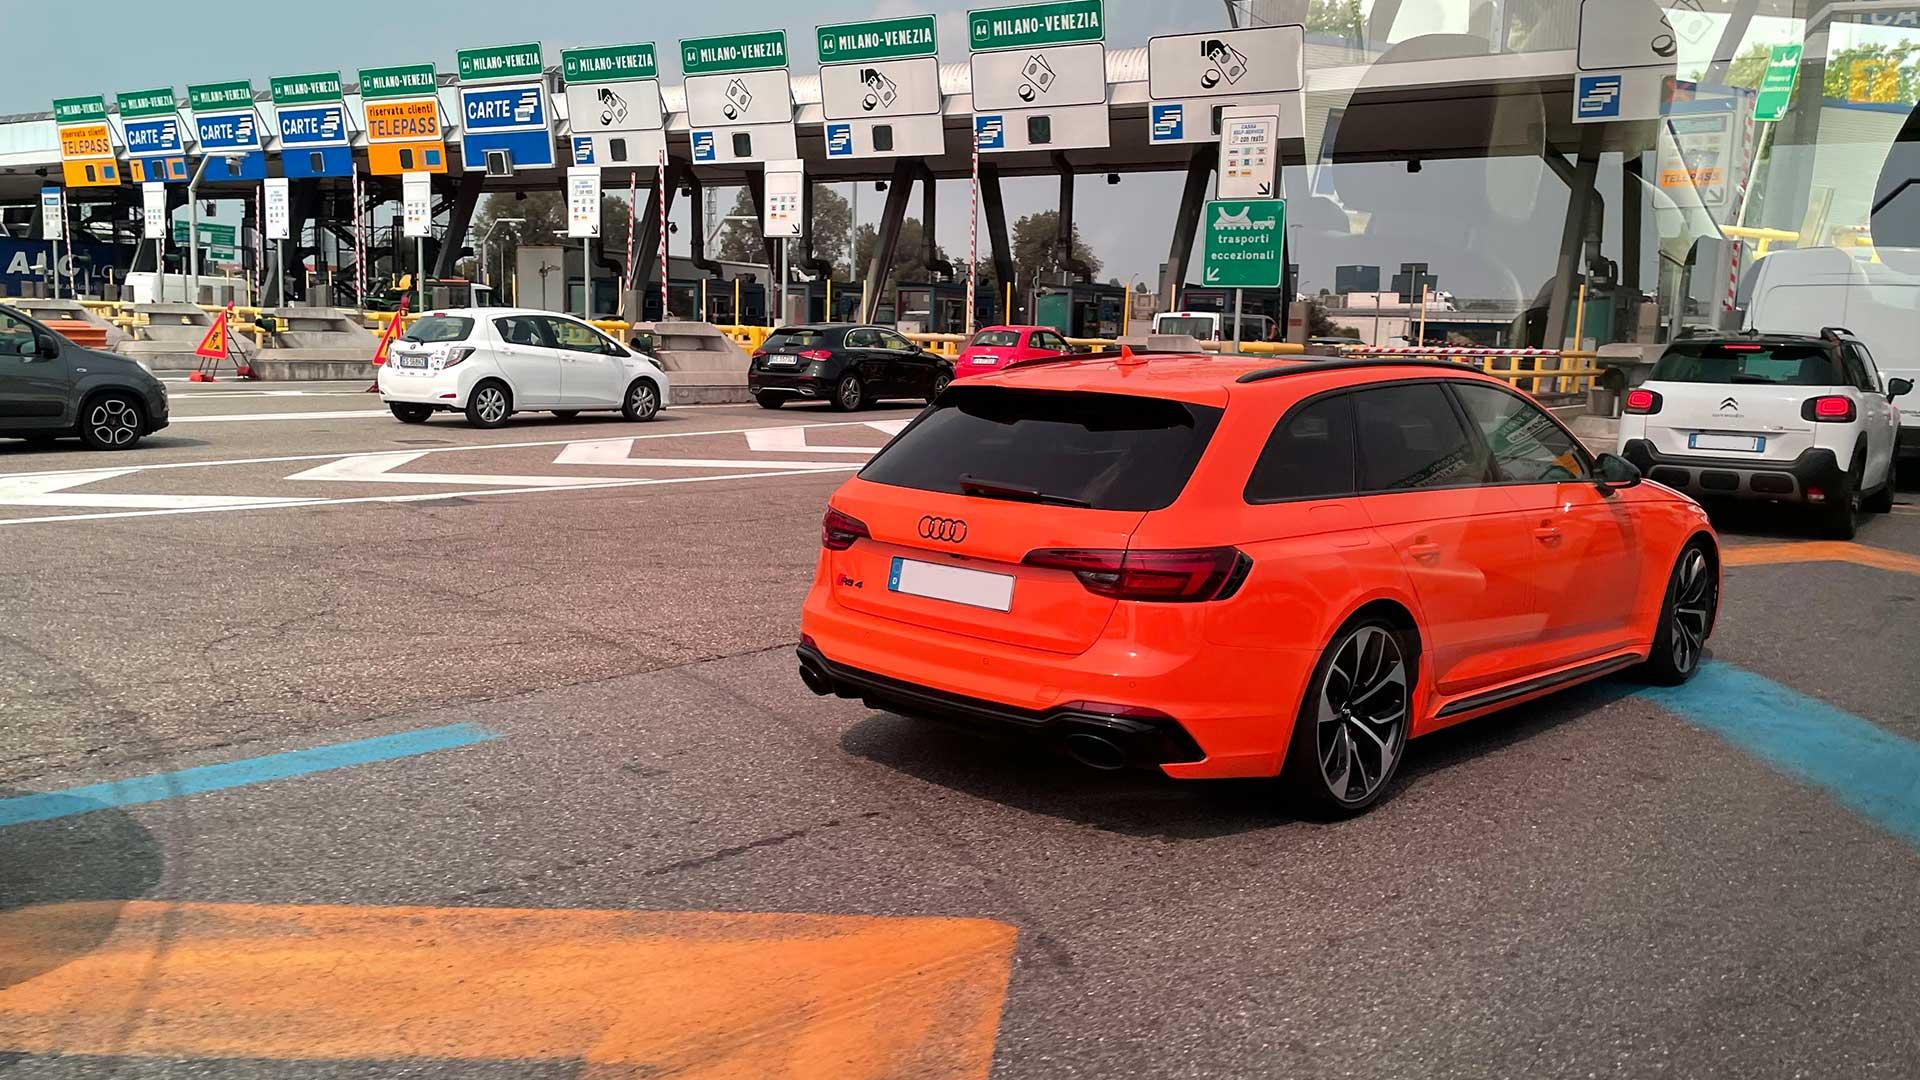 Snelweg in Italië met tolpoort (tolweg) en Audi RS4